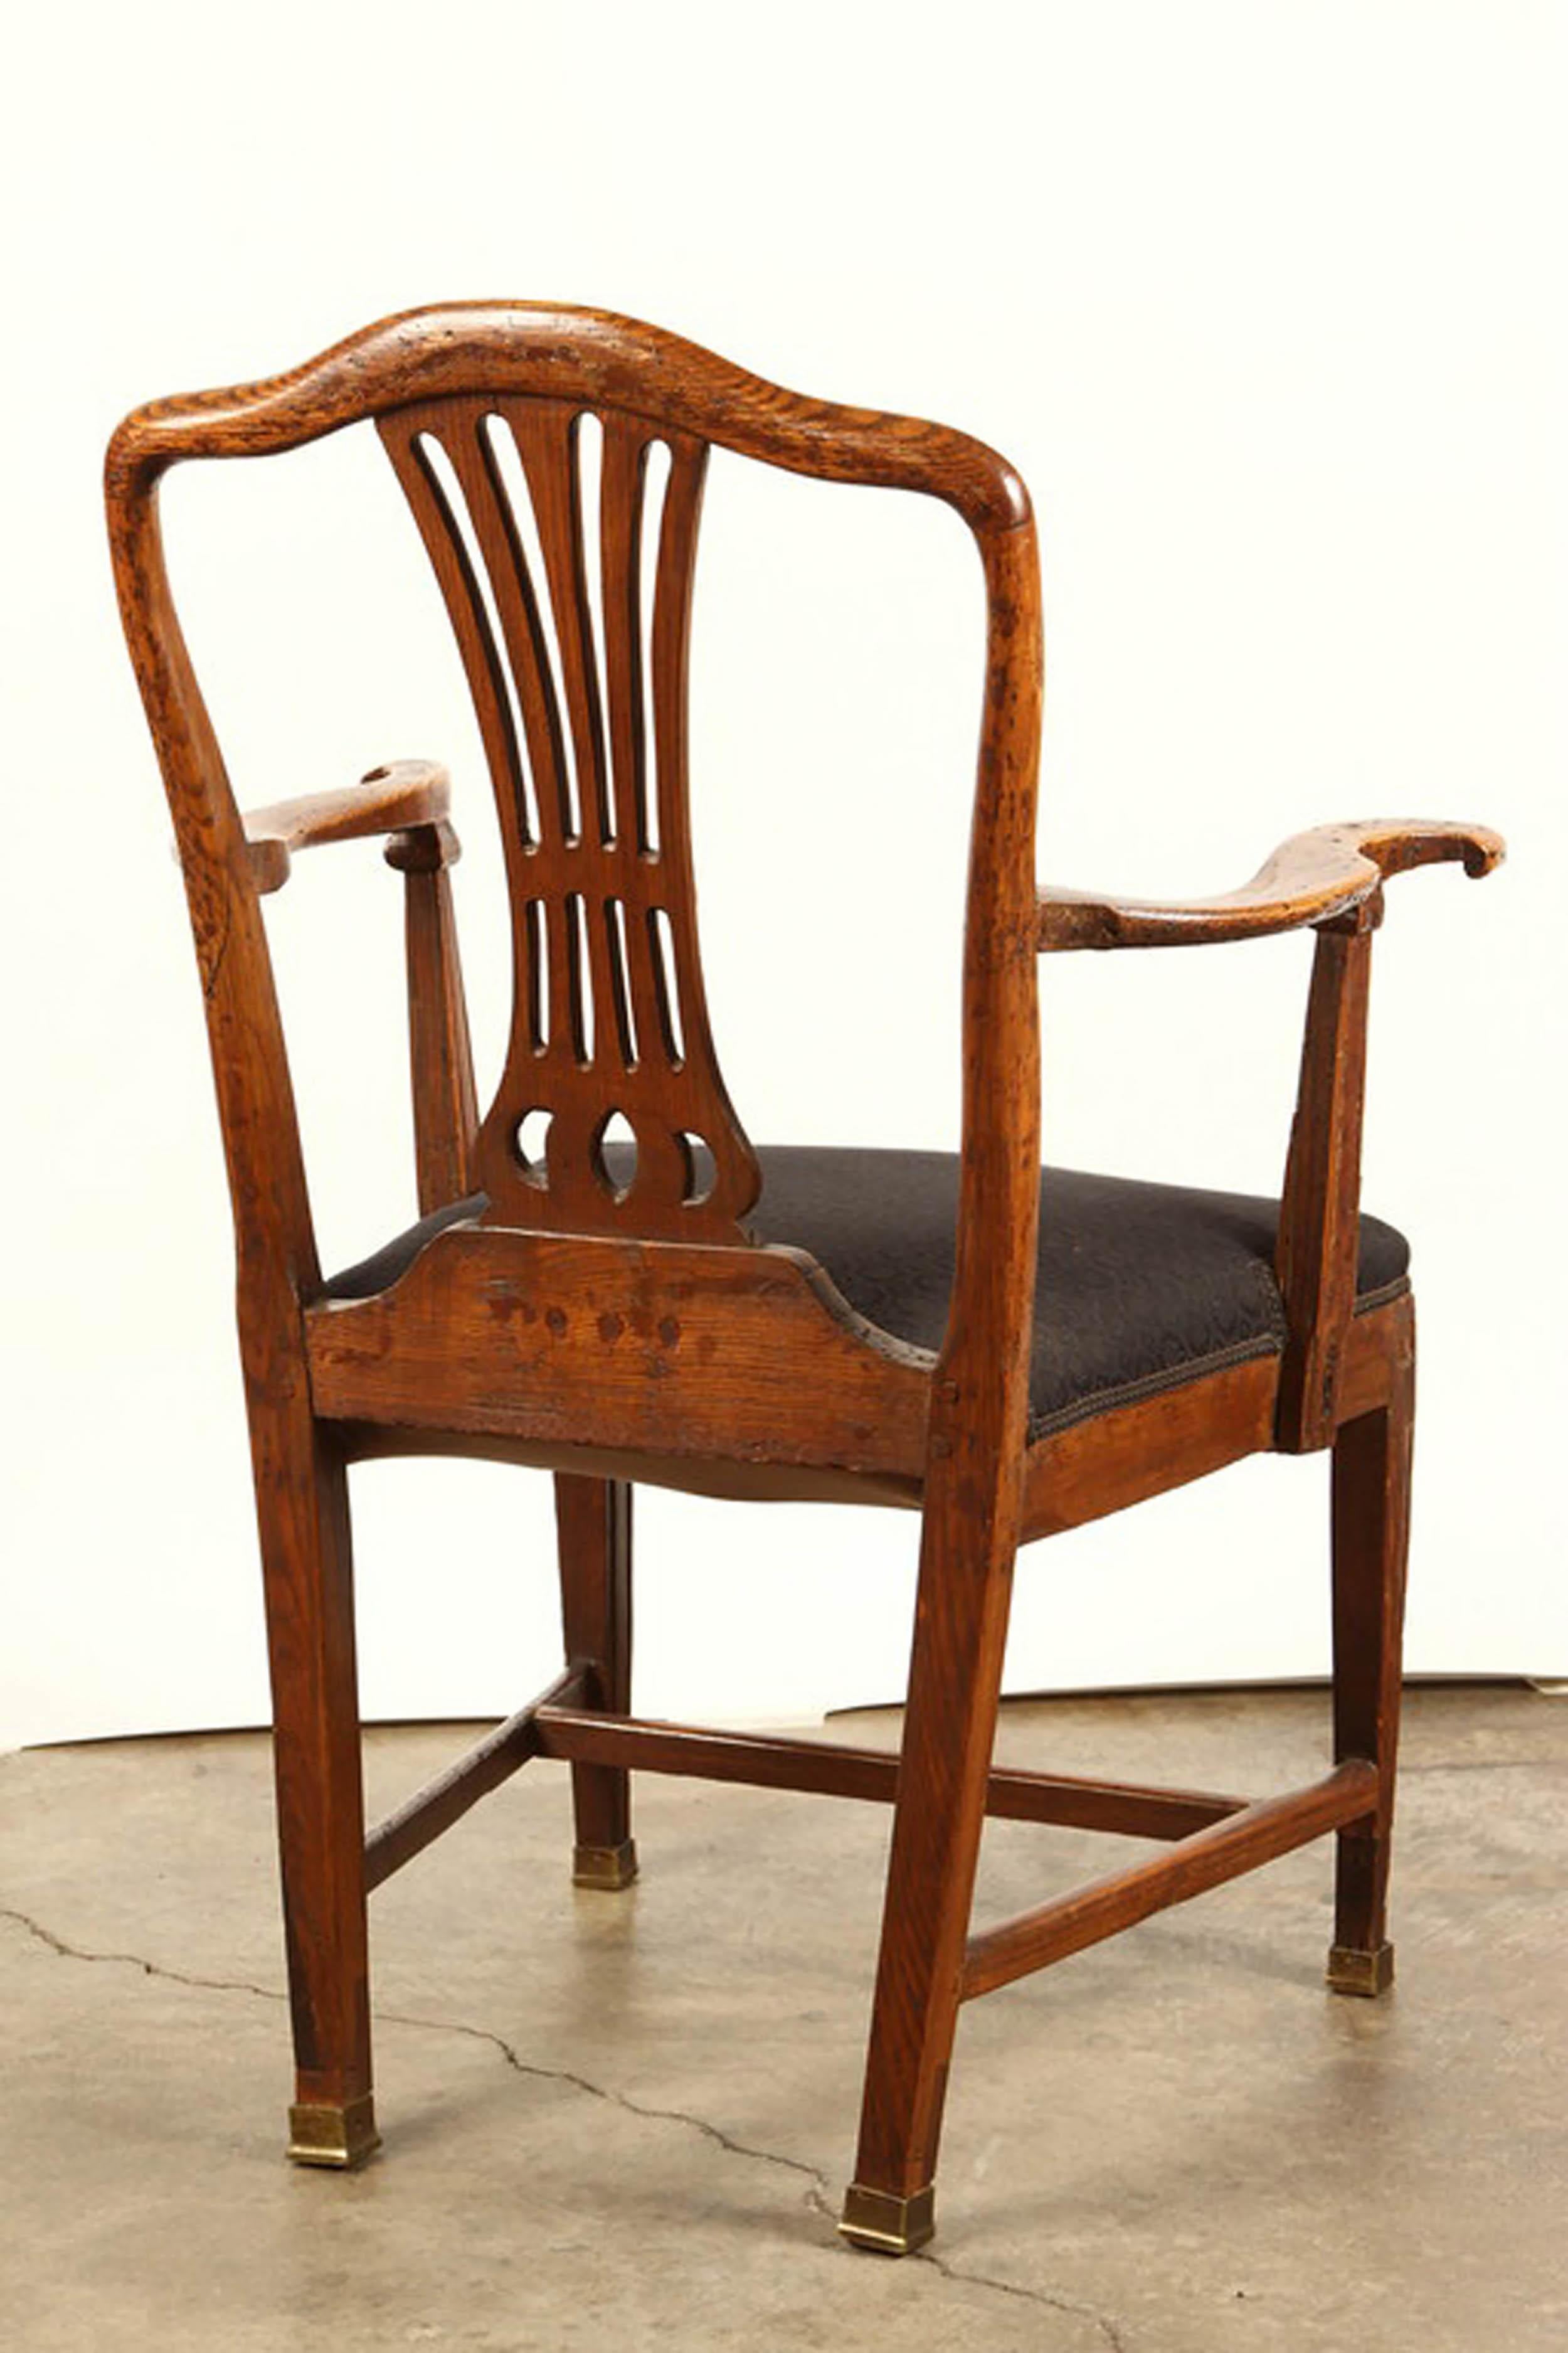 Orme fauteuil de campagne danois en orme du 18e siècle en vente